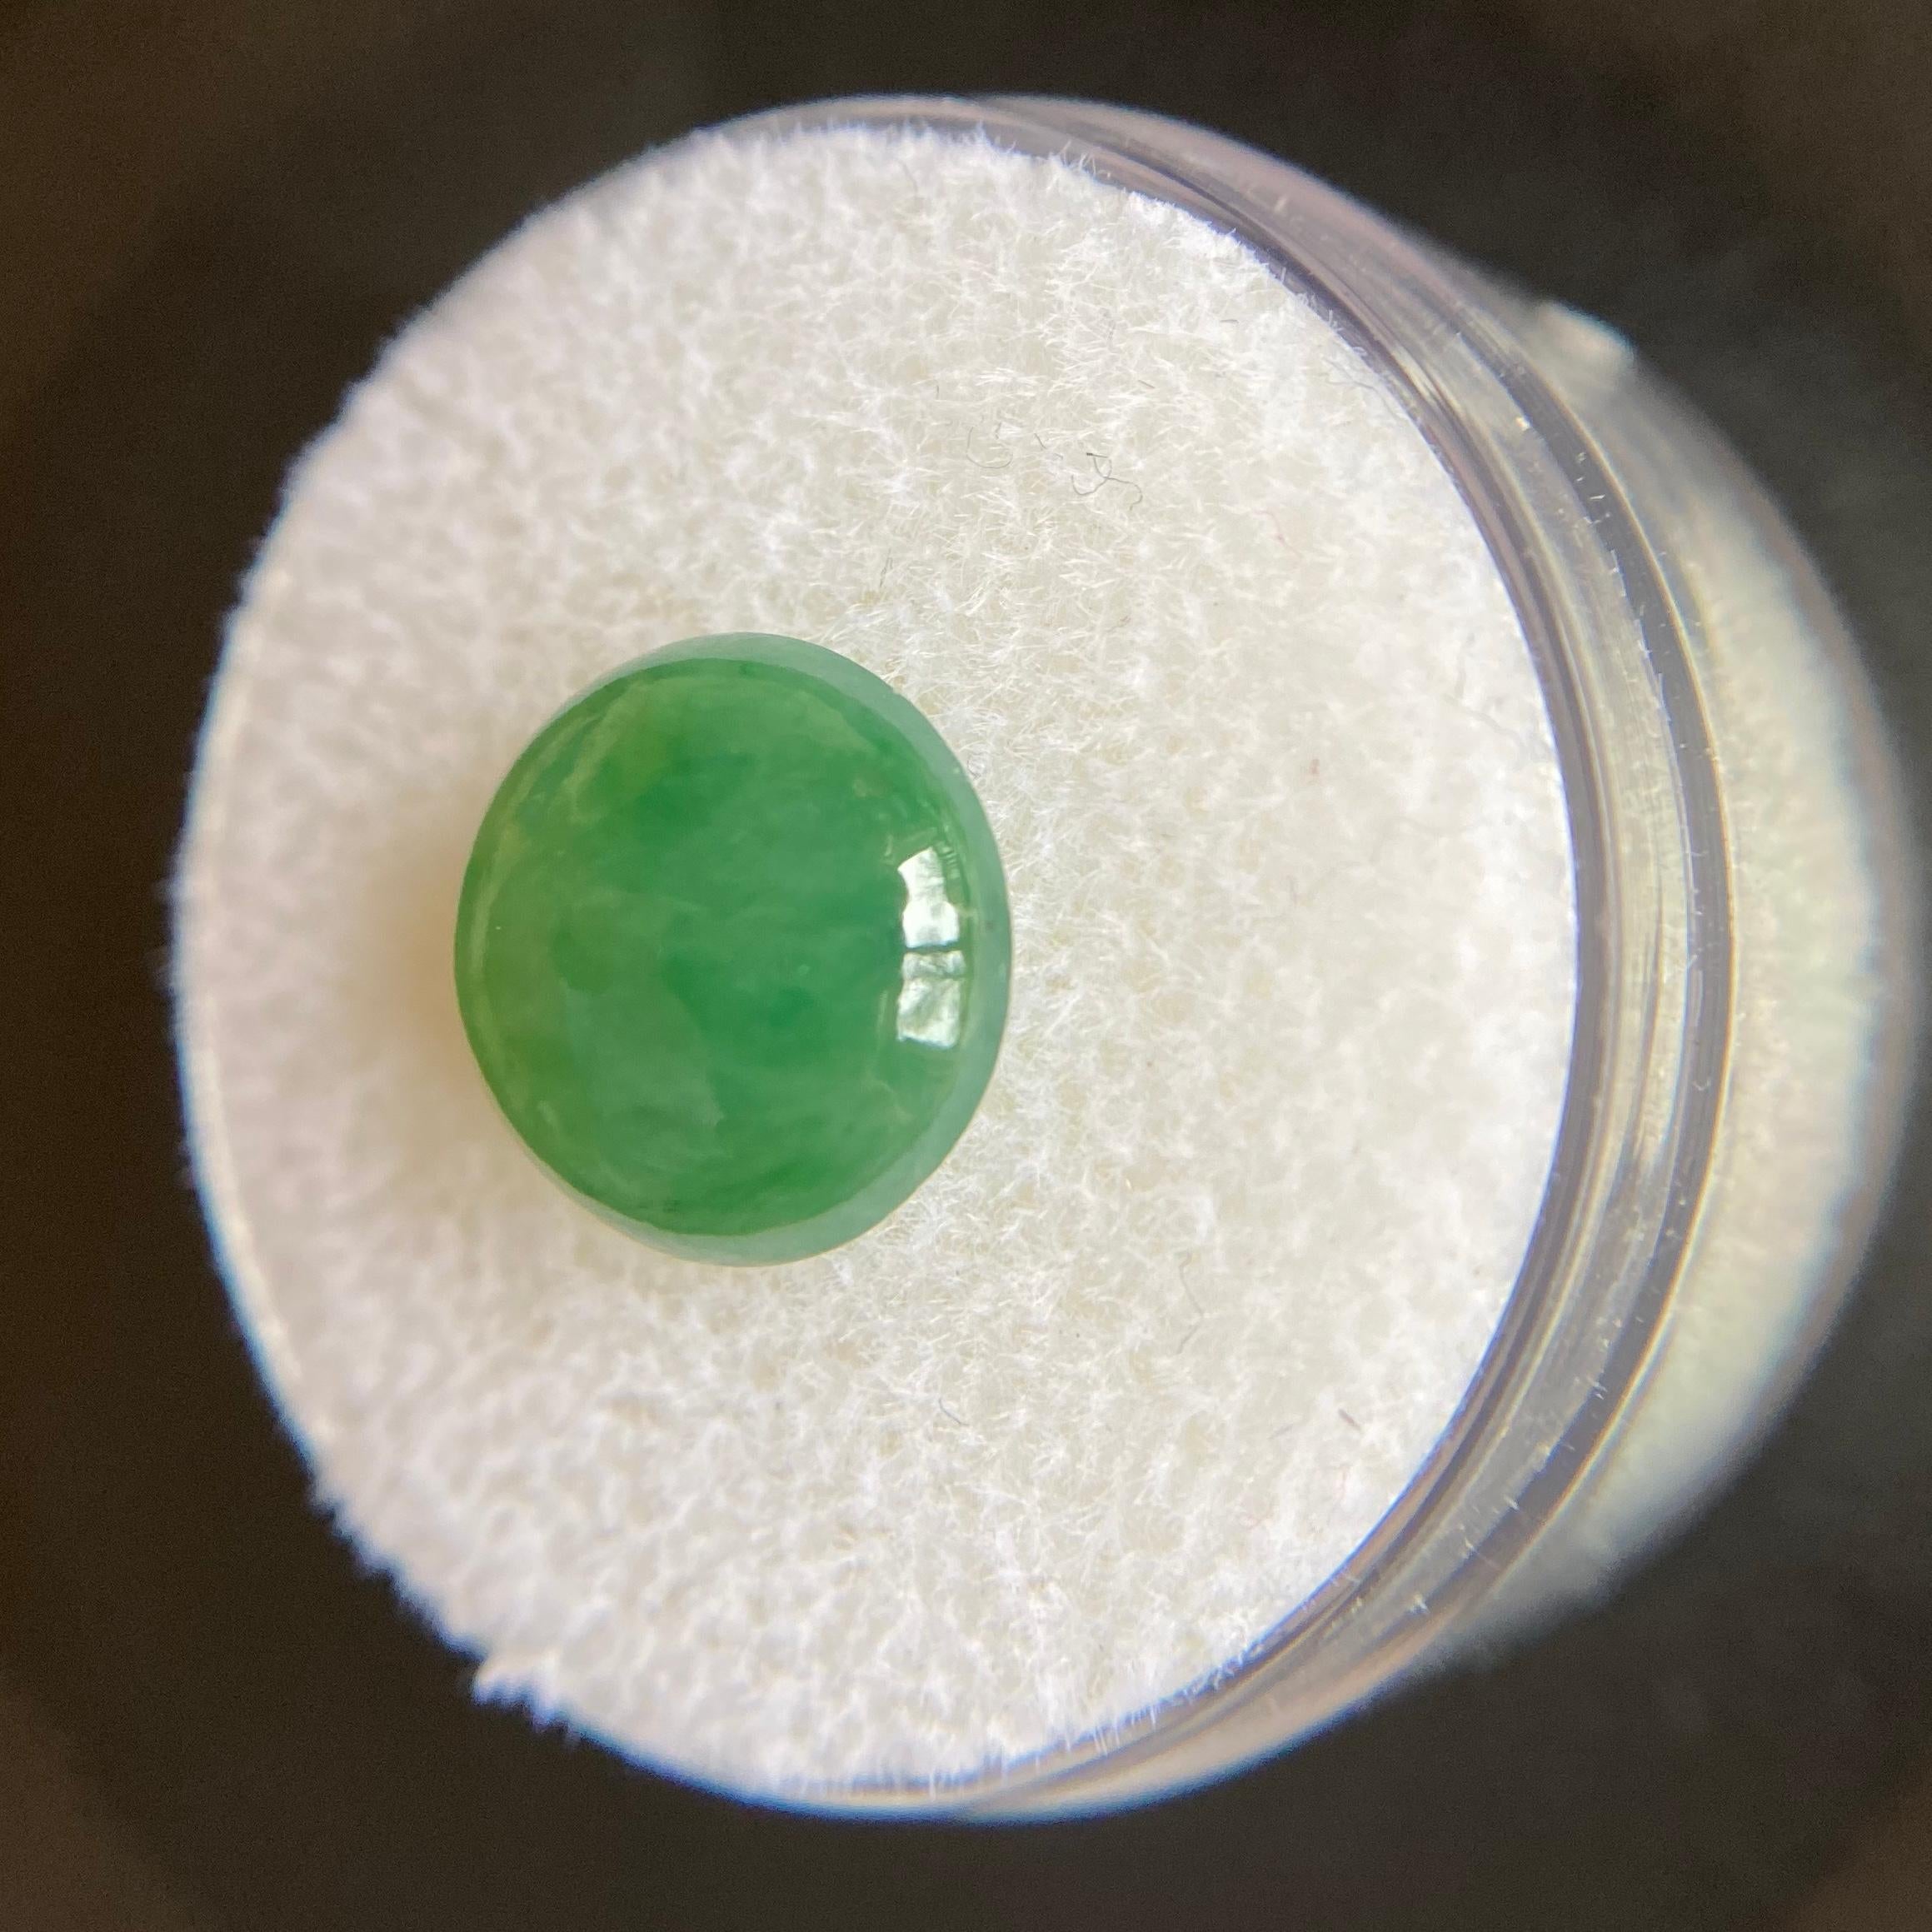 Round Cut GIA Certified 4.11 Carat Jadeite Jade ‘A’ Grade Deep Green Round Cabochon Gem